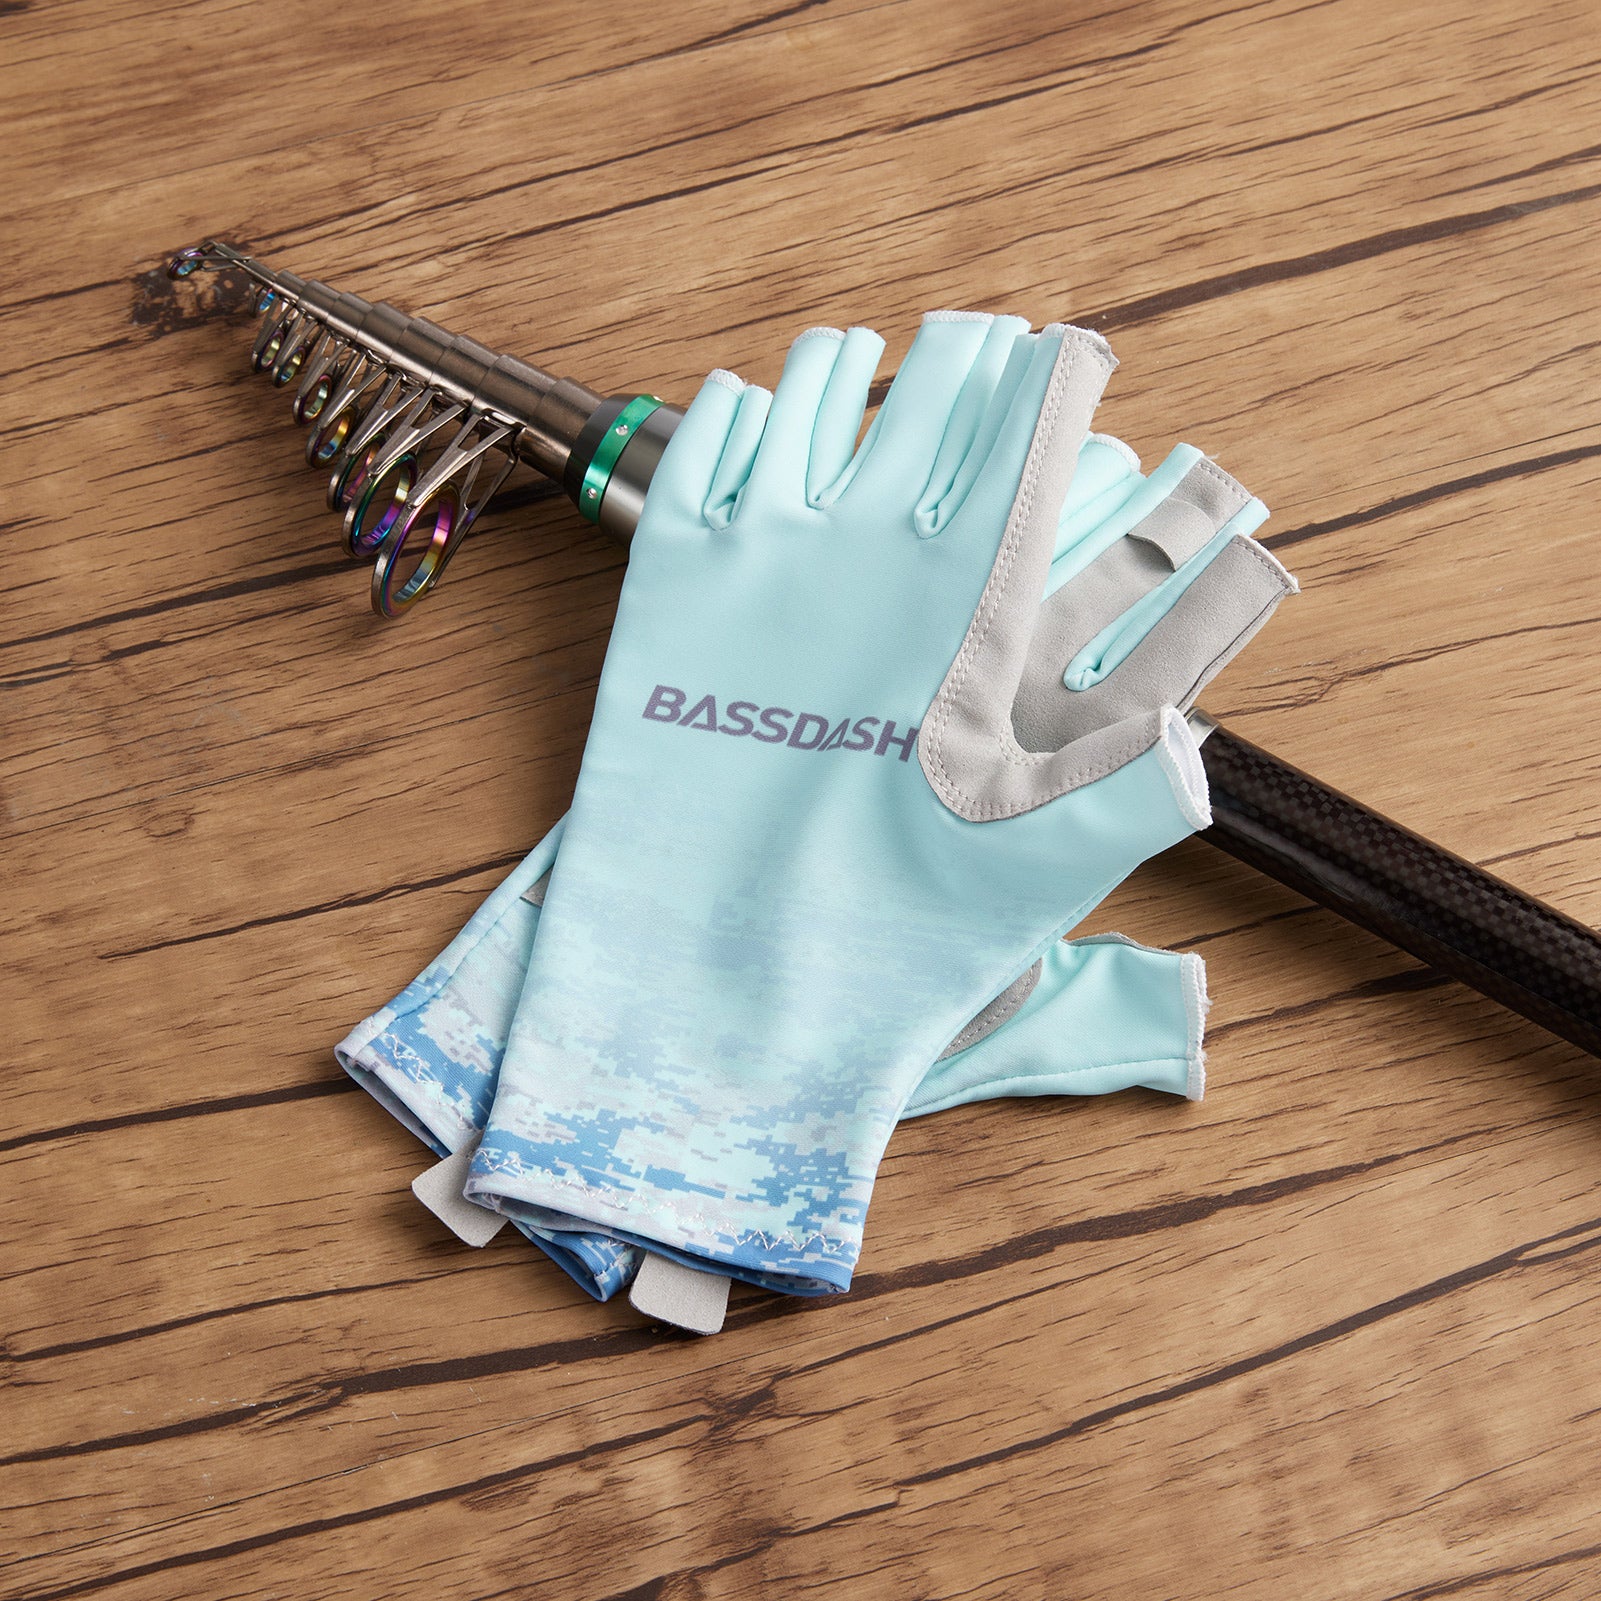 Kyncilor Fishing Gloves Upf 50+ Fingerless Gloves For Women Men Sun Protection Breathable Non-slip For Kayaking Sailing Rowing